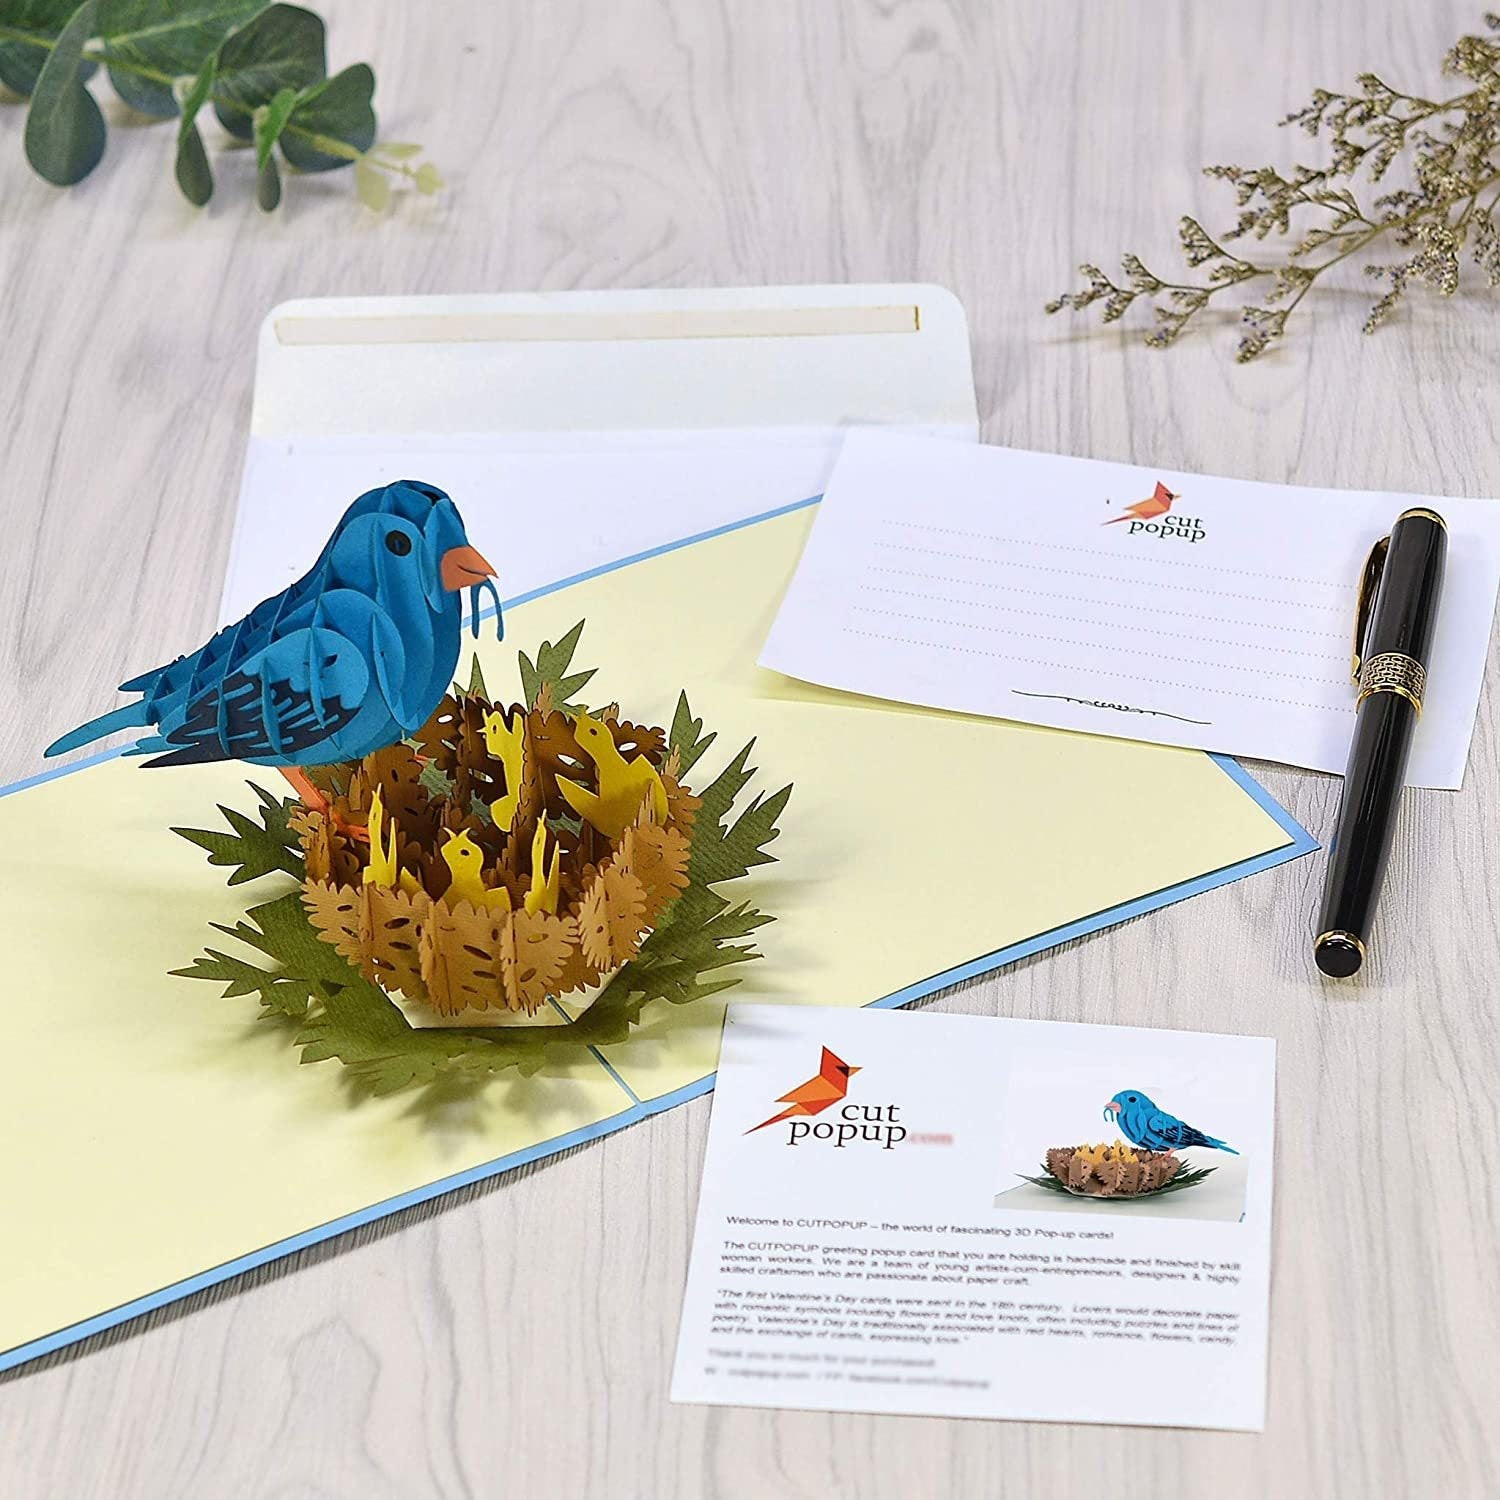 Blue Bird (with nest) 3D Pop Up Card